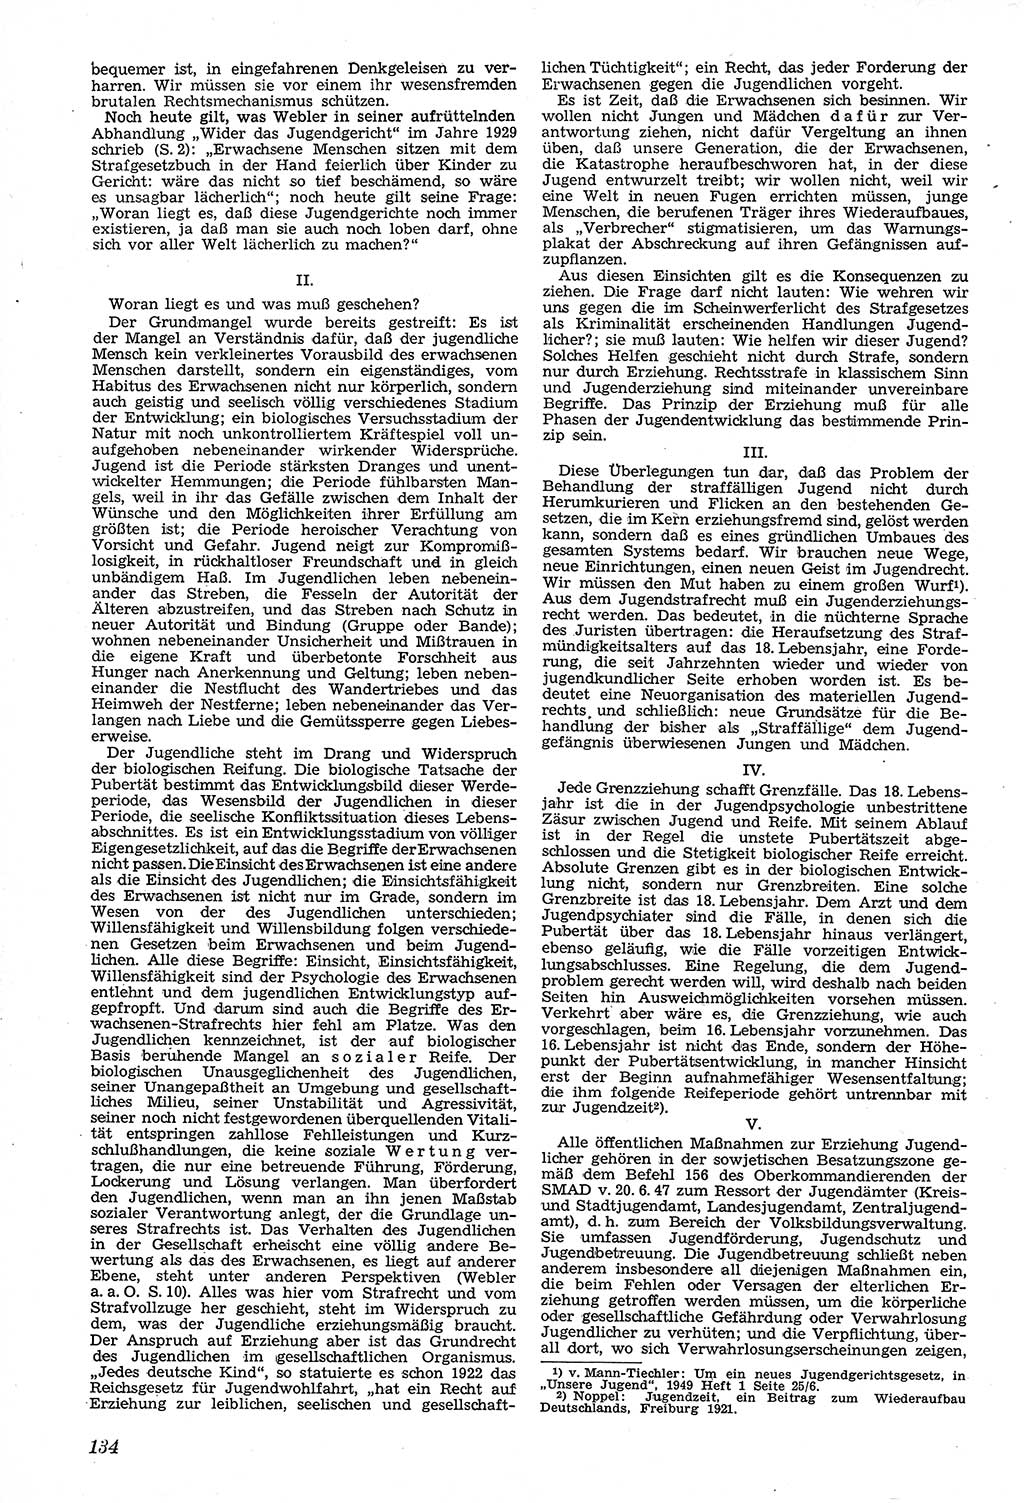 Neue Justiz (NJ), Zeitschrift für Recht und Rechtswissenschaft [Sowjetische Besatzungszone (SBZ) Deutschland, Deutsche Demokratische Republik (DDR)], 3. Jahrgang 1949, Seite 134 (NJ SBZ Dtl. DDR 1949, S. 134)